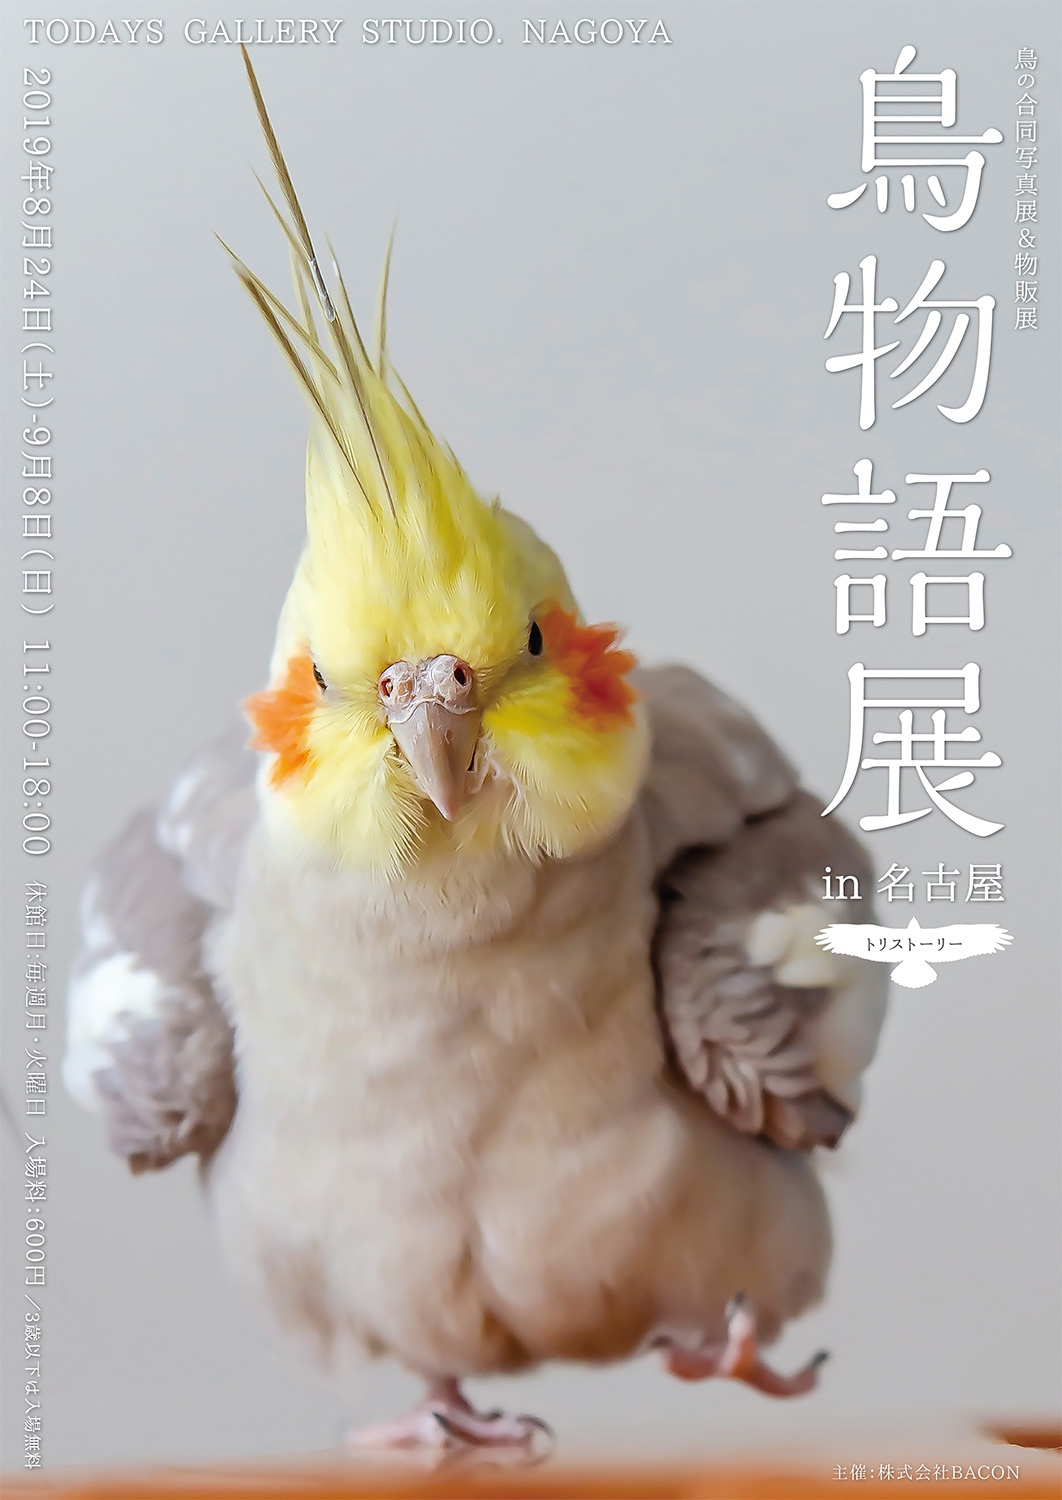 鳥の合同写真＆物販展『鳥物語トリストーリー展 in 名古屋』 愛嬌たっぷりインコから、勇猛な野鳥まで | SPICE - エンタメ特化型情報